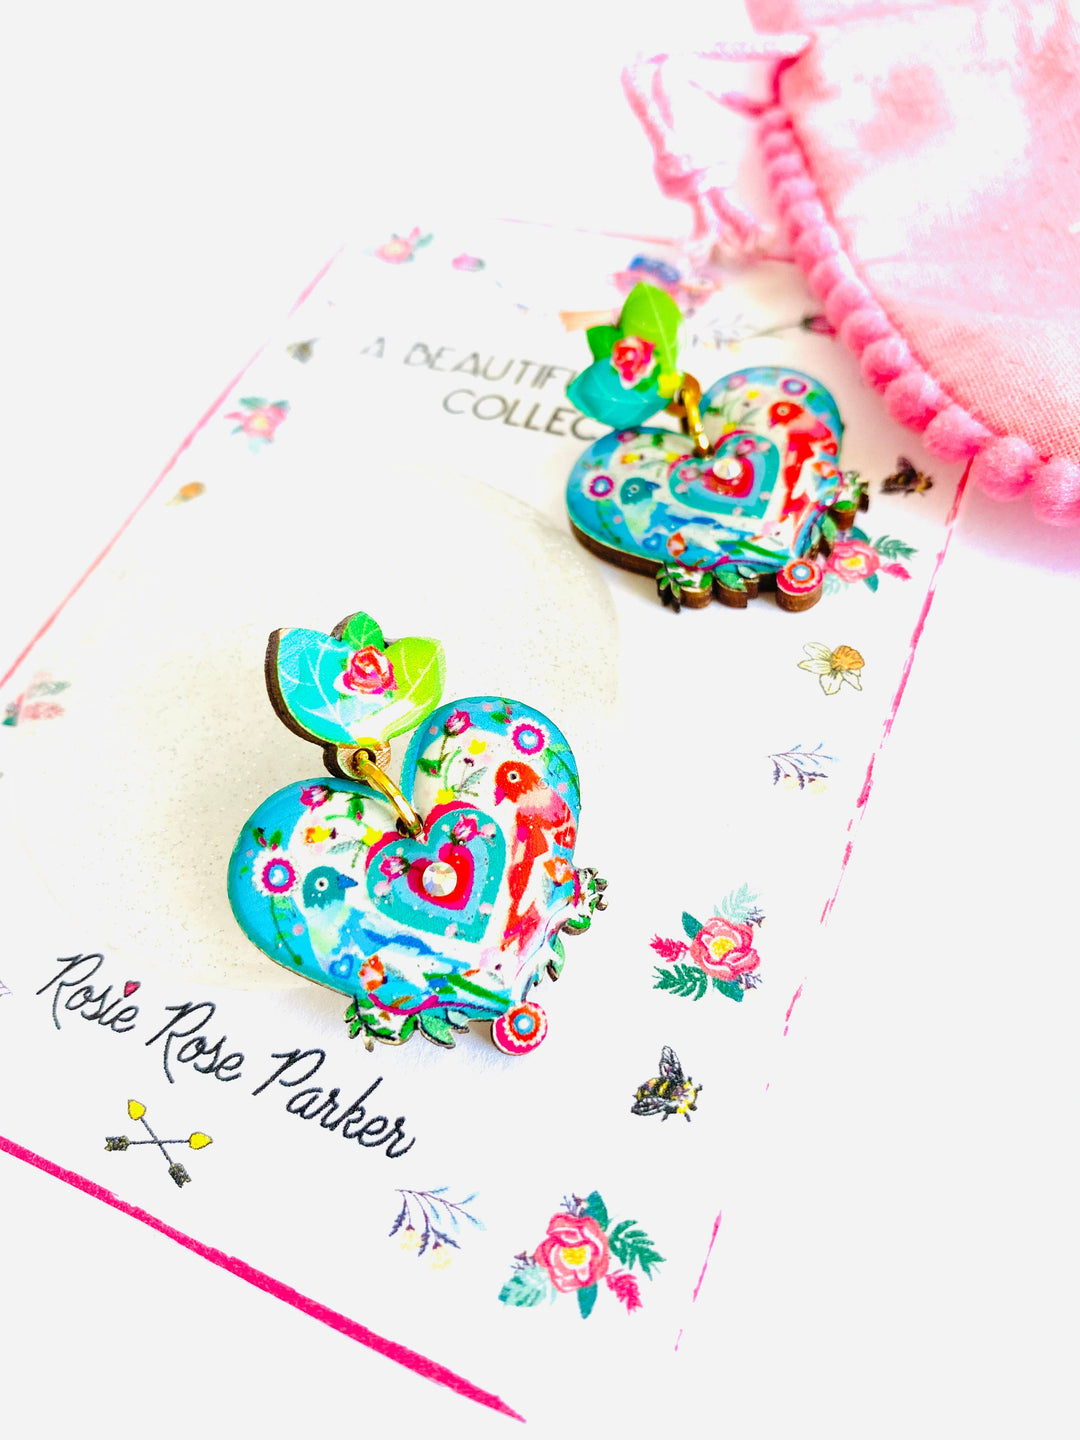 Love Bird Heart Shaped Earrings by Rosie Rose Parker